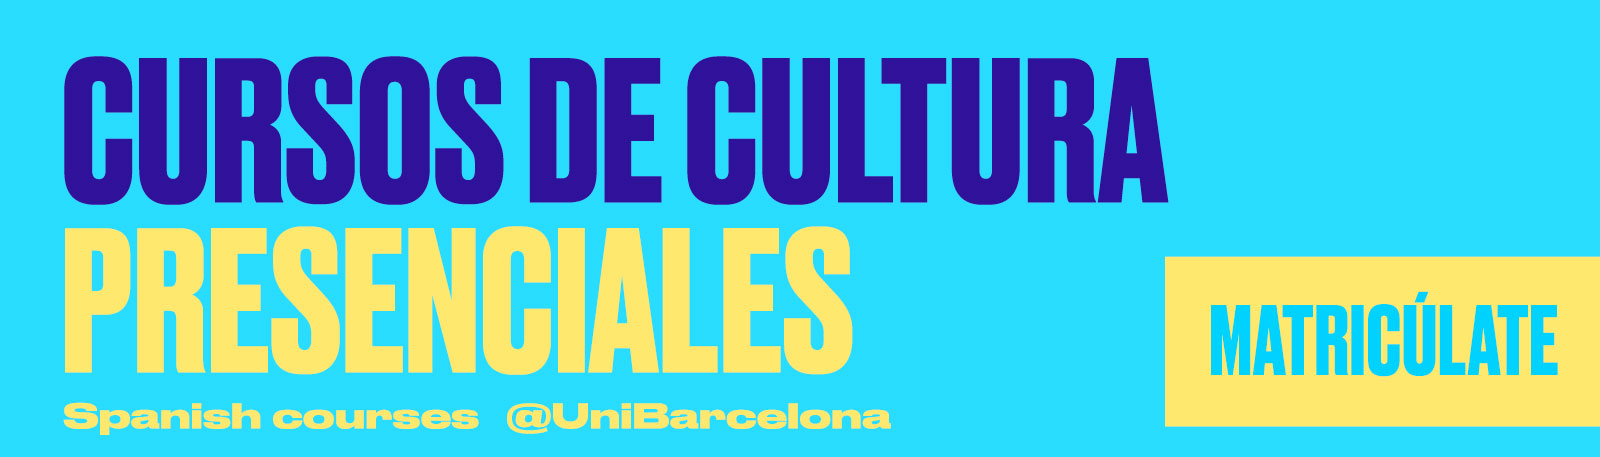 SPANIFY - Cursos de cultura presenciales